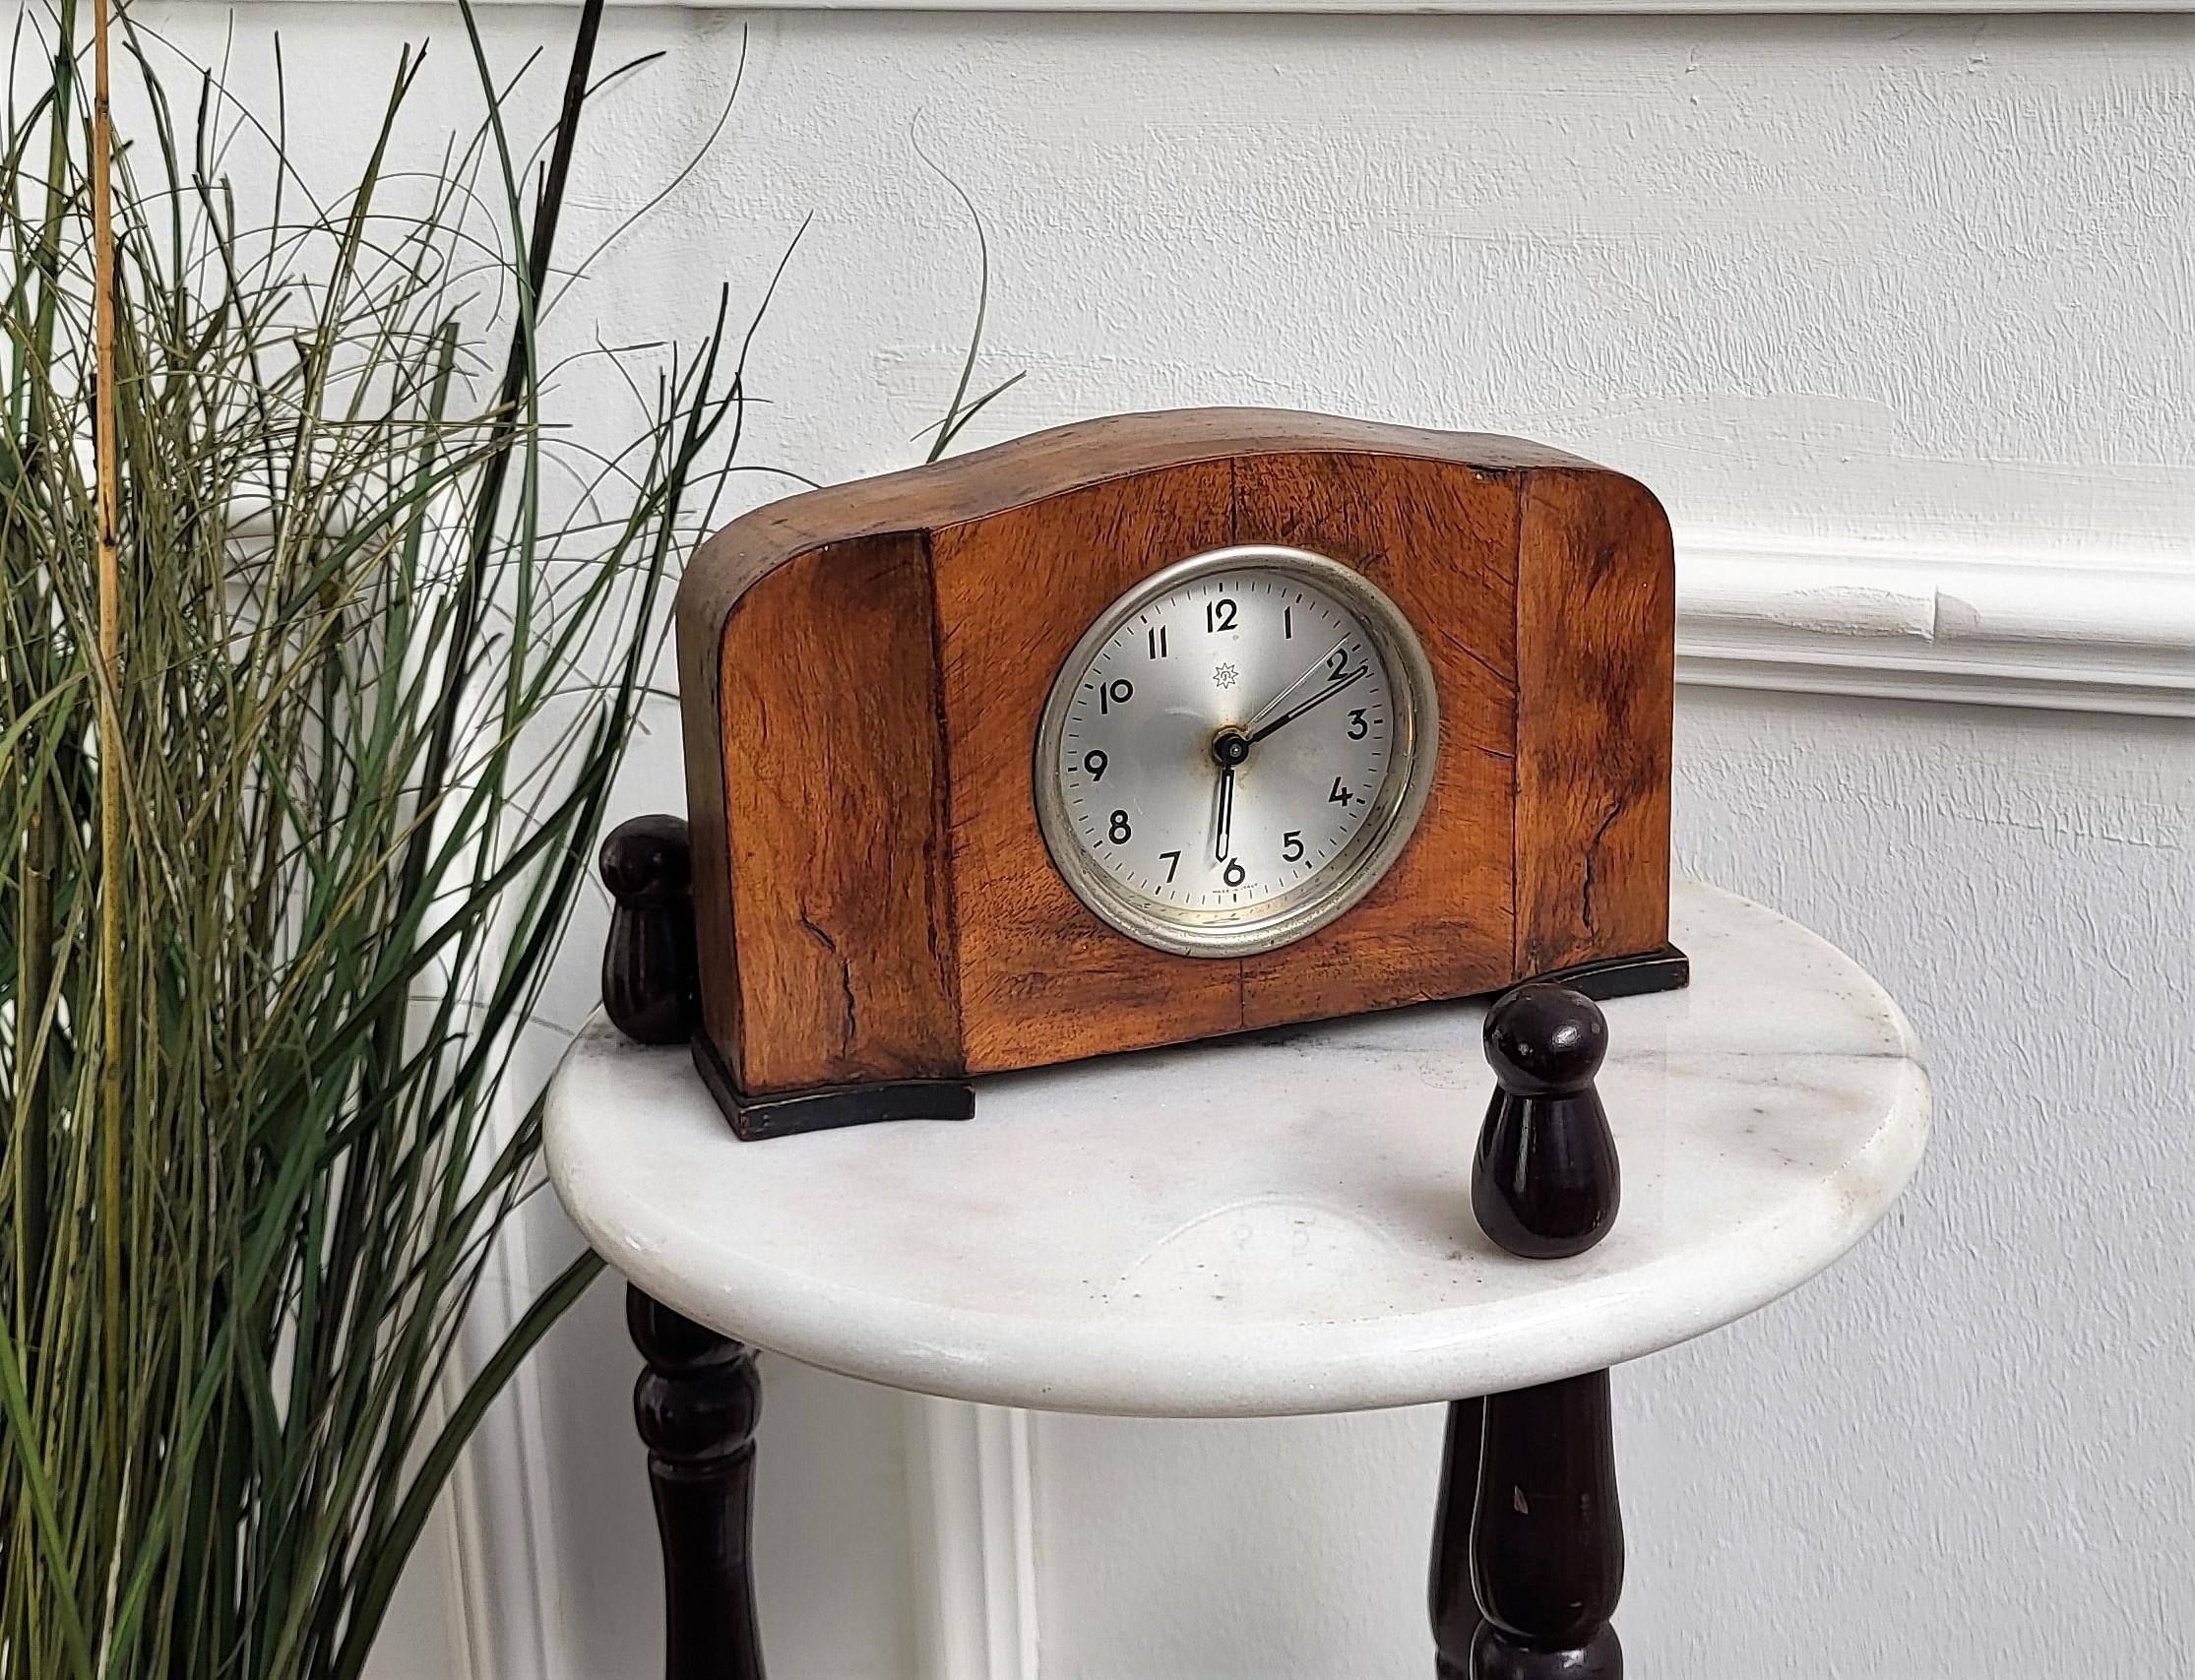 Réveil de cheminée de style Art Déco en placage de noyer et éléments chromés, par Junghans, une société d'horlogerie allemande mais fabriquée en Italie dans leur atelier de Venise, qui a fonctionné de 1899 jusqu'aux années 1930. La pièce est en état